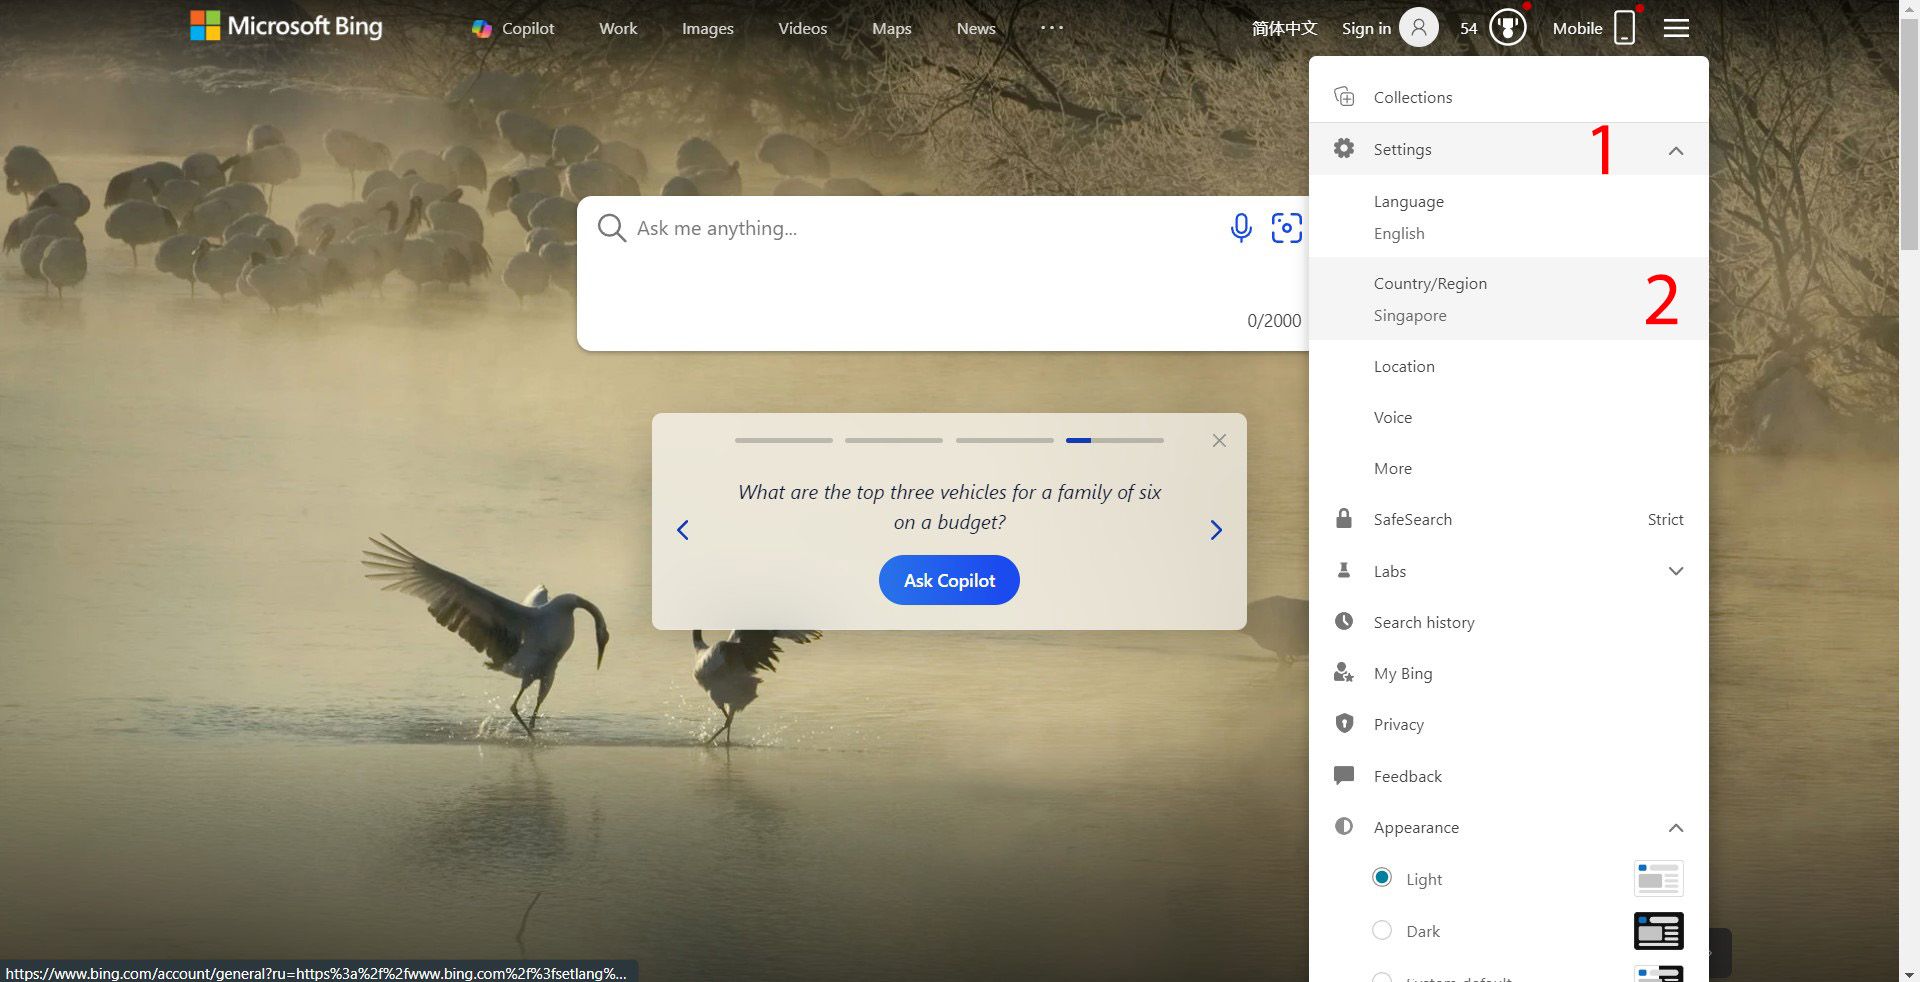 Uma captura de tela da página inicial do Bing com um menu suspenso de configurações aberto, mostrando opções incluindo SafeSearch definido como ‘Estrito’ e País/Região definido como Cingapura.